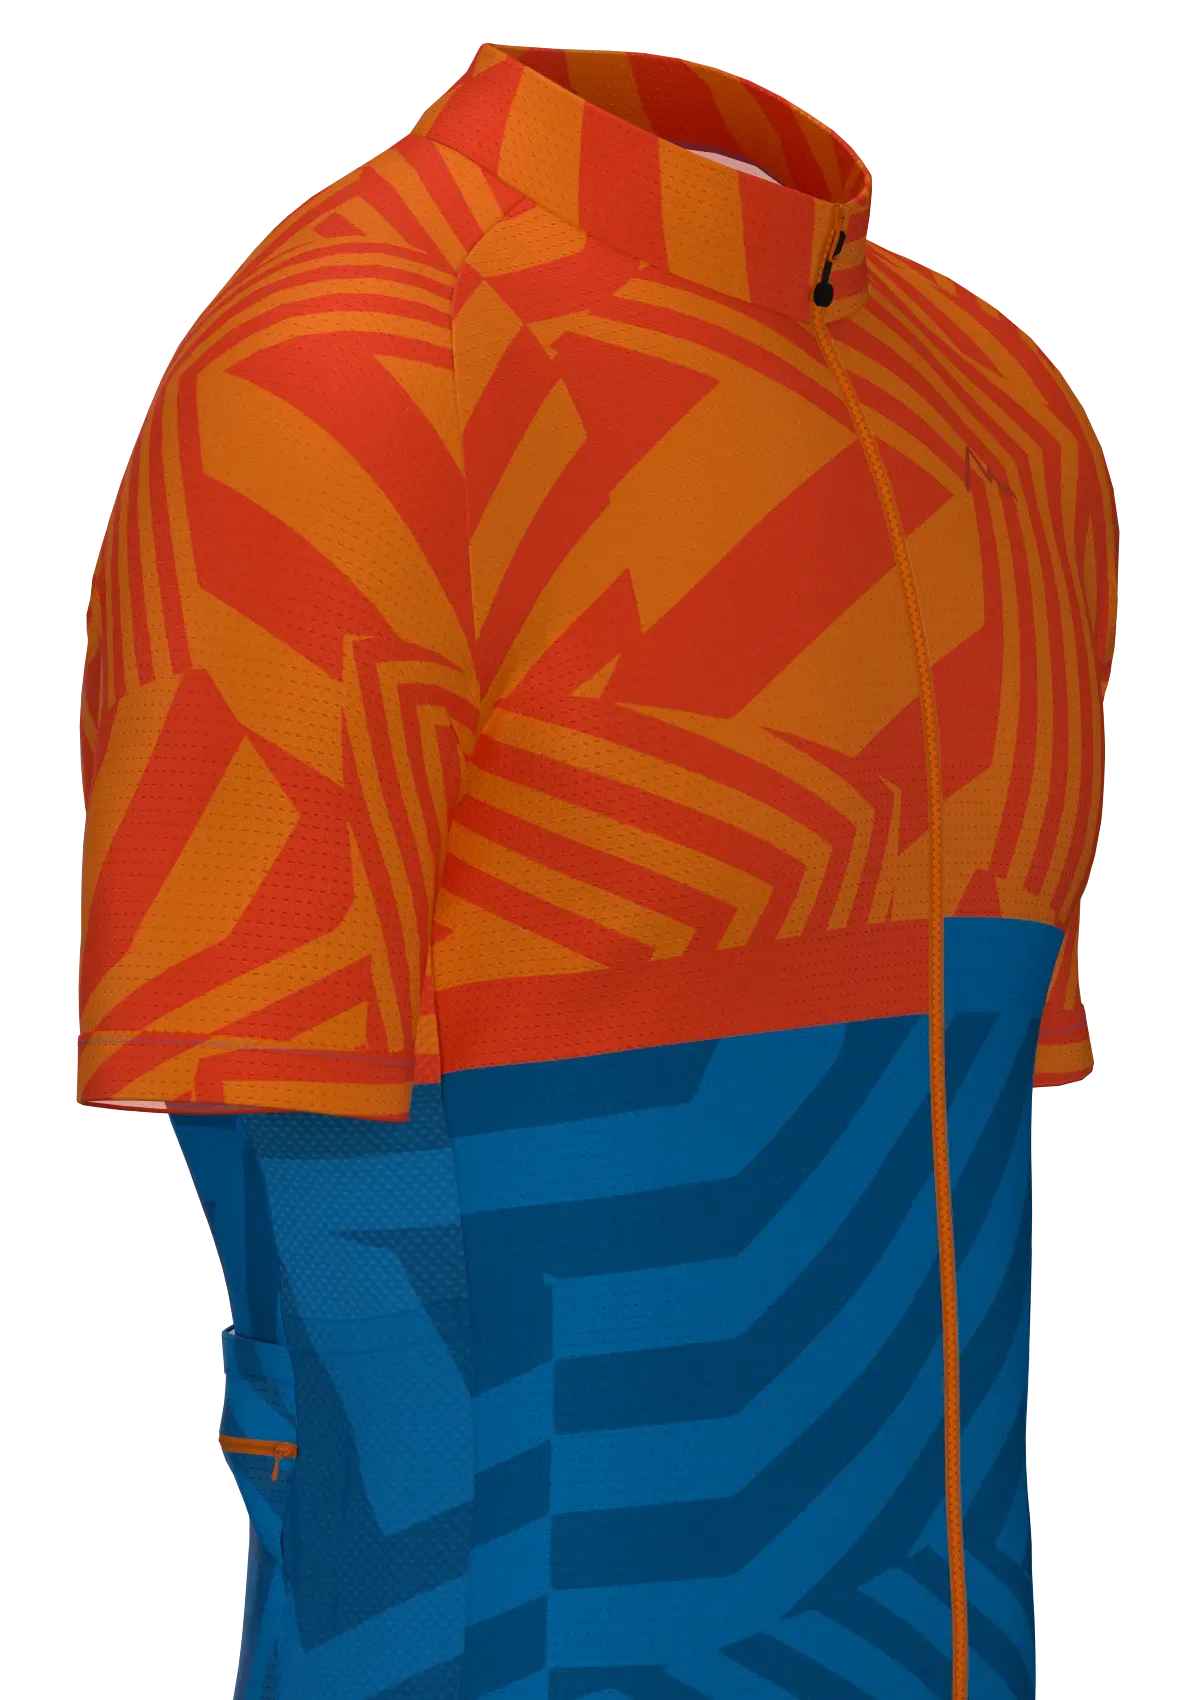 Regular Orange-Blau Fahrrad Trikot